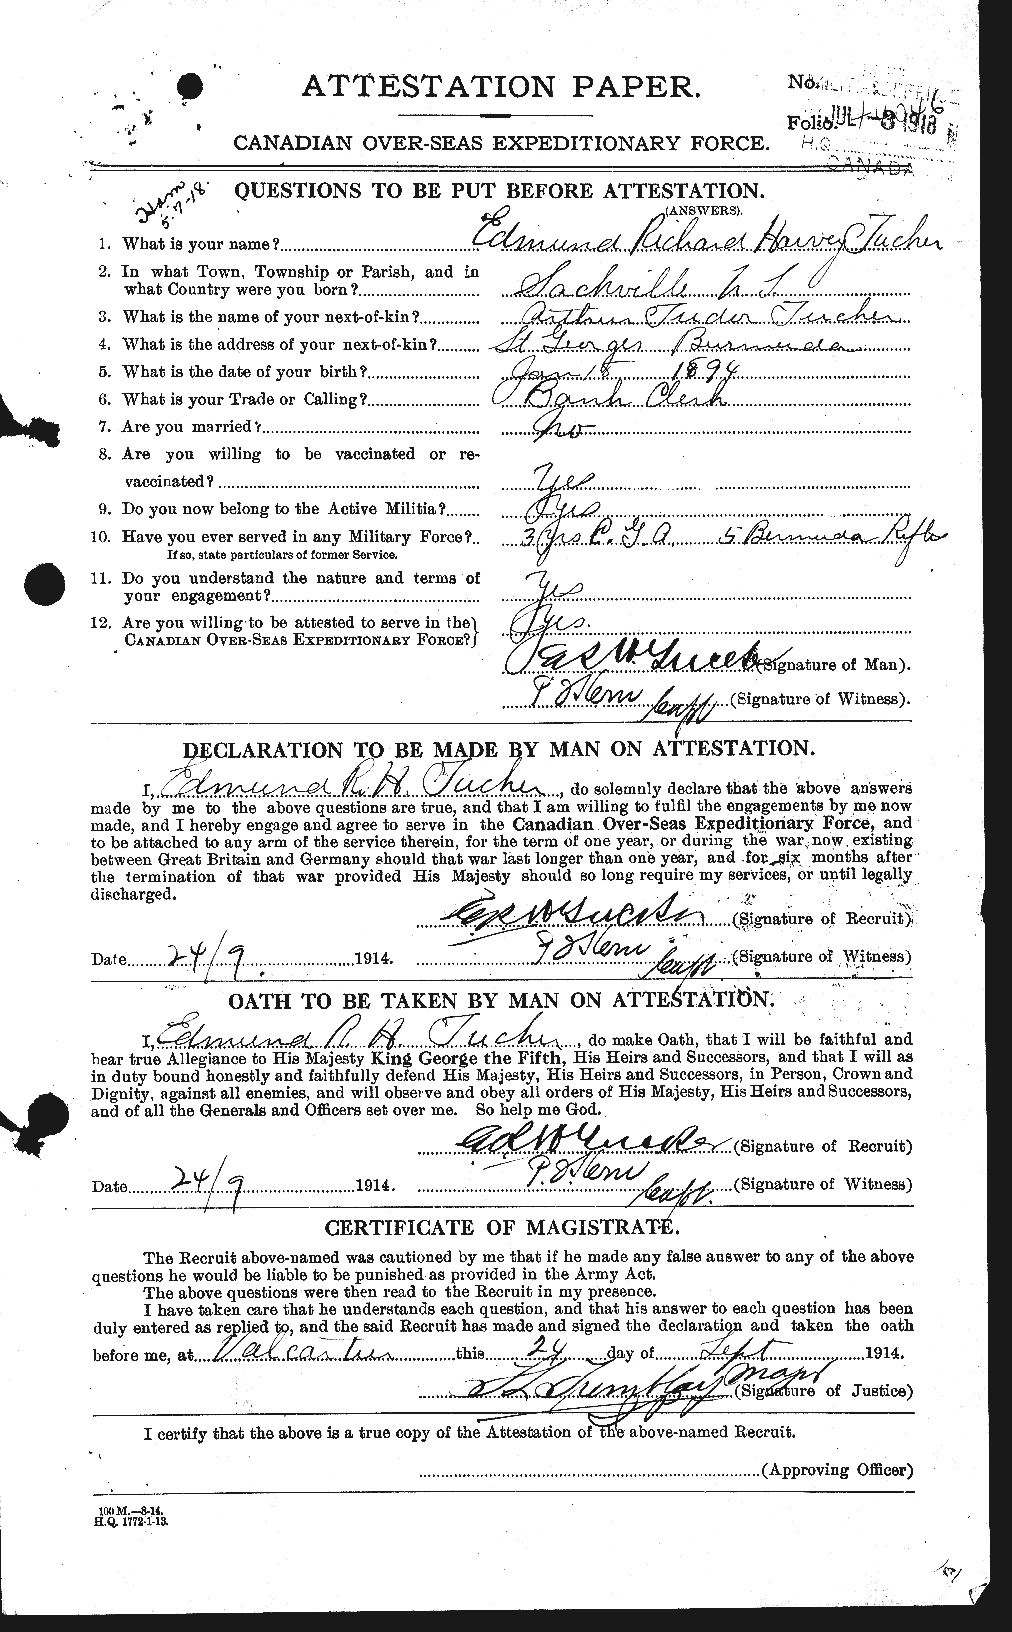 Dossiers du Personnel de la Première Guerre mondiale - CEC 642675a